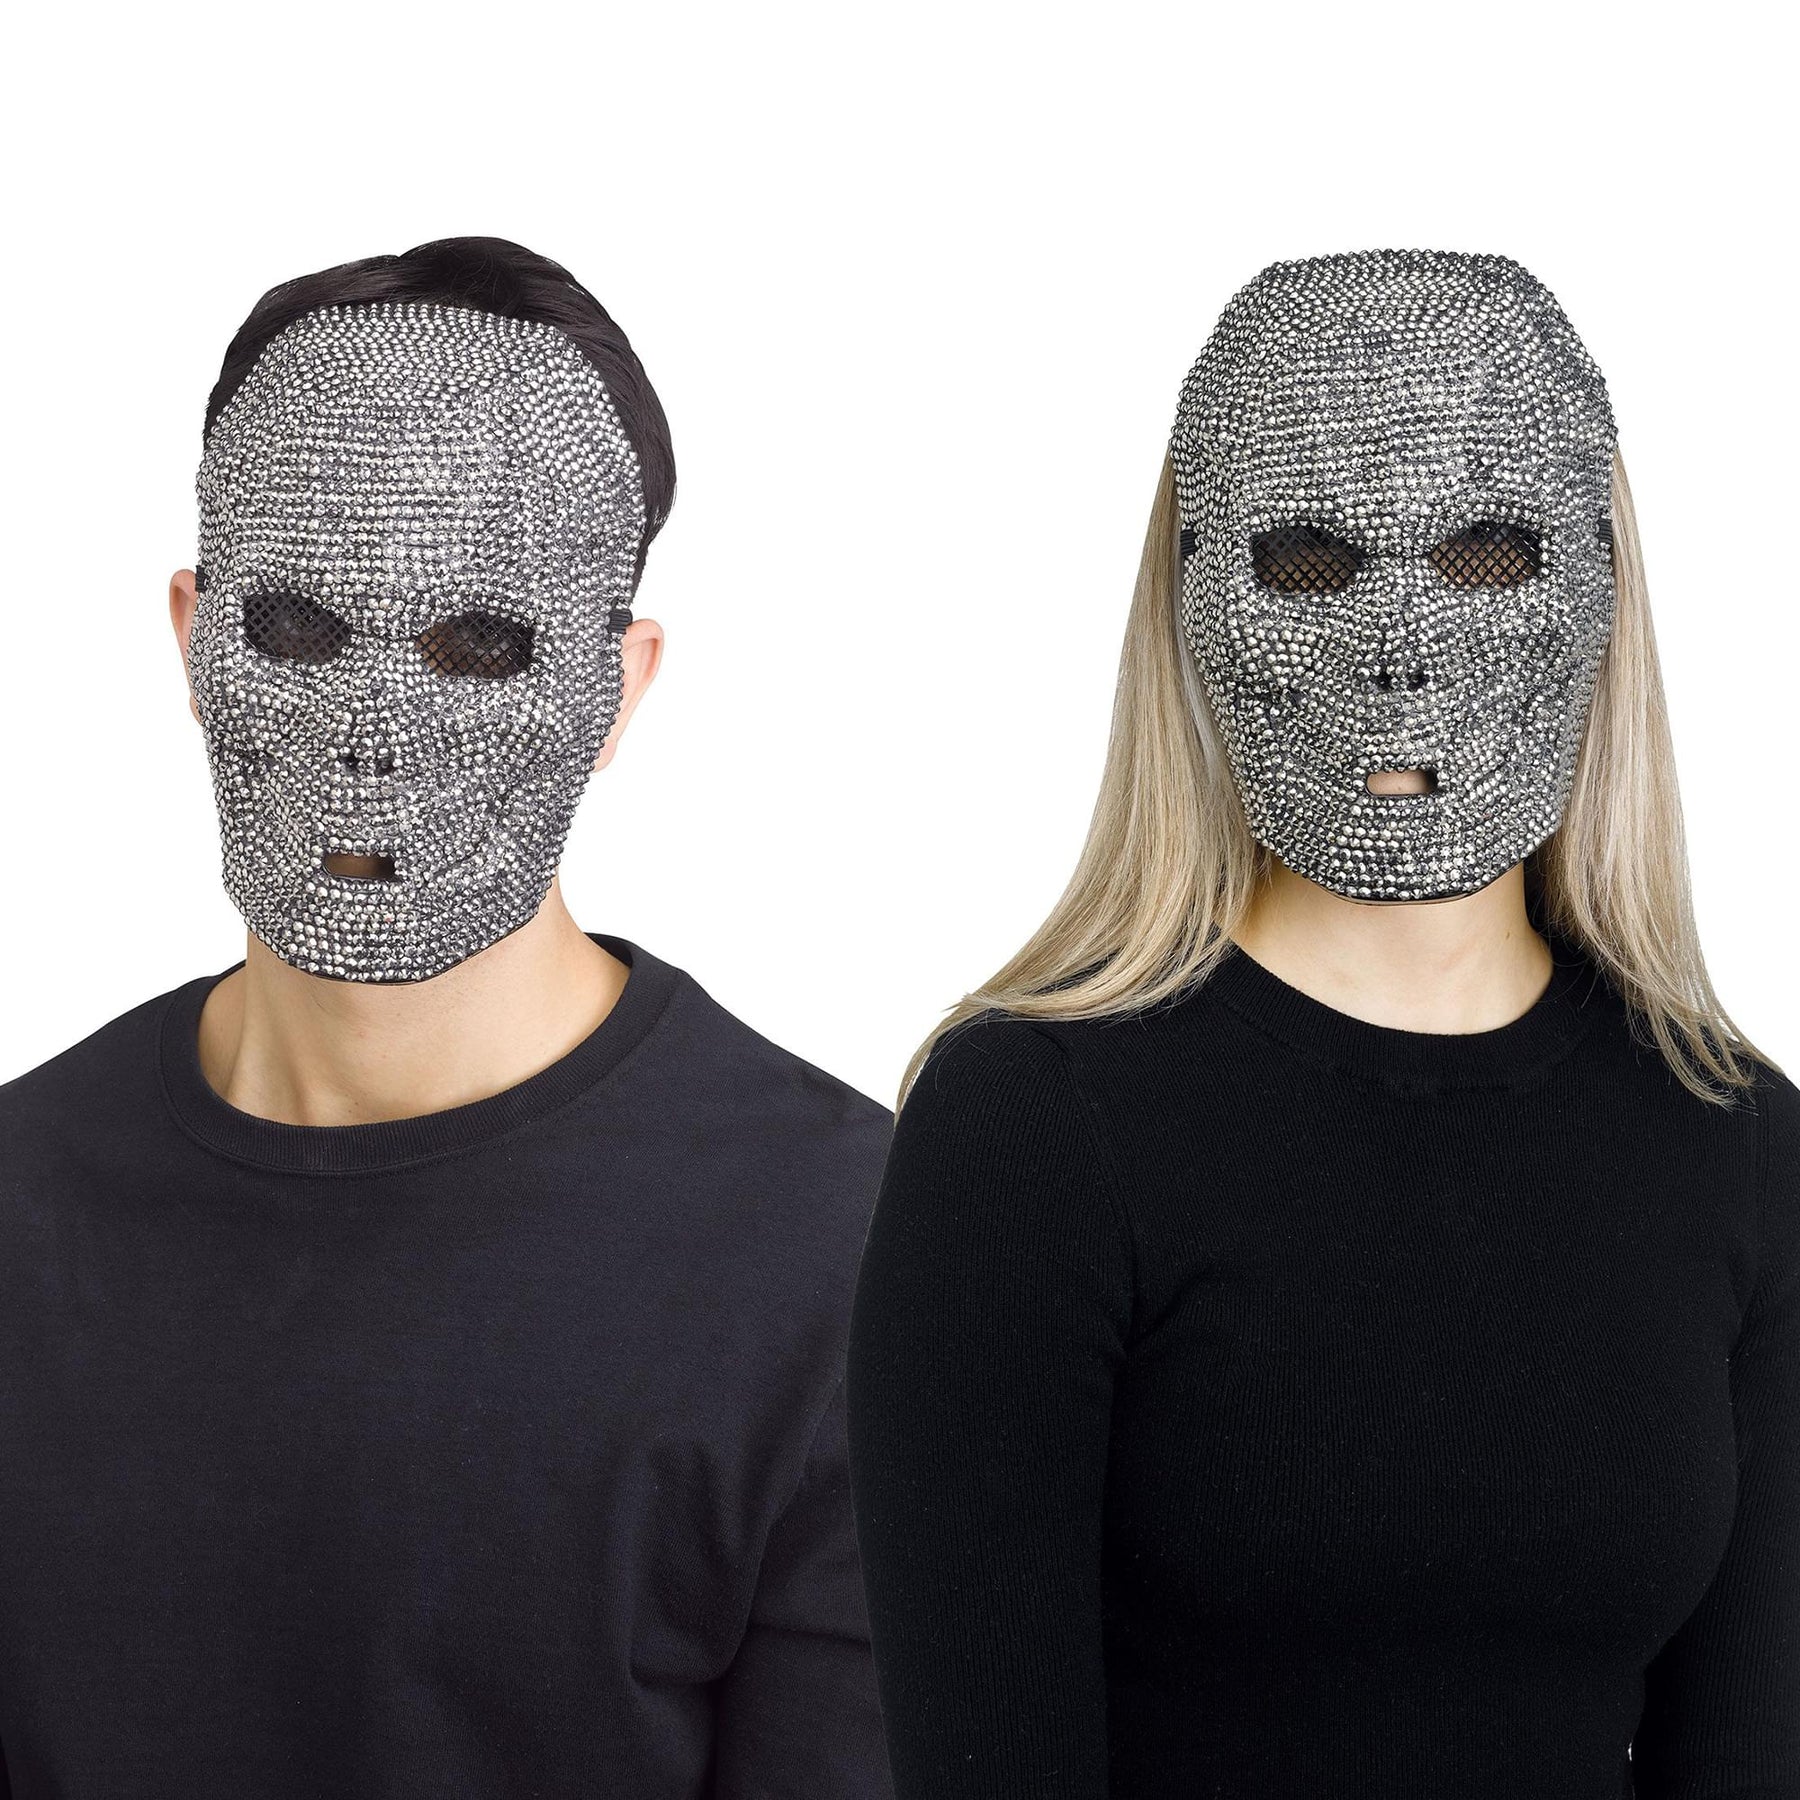 Gunpowder Bling Skull Adult Costume Mask